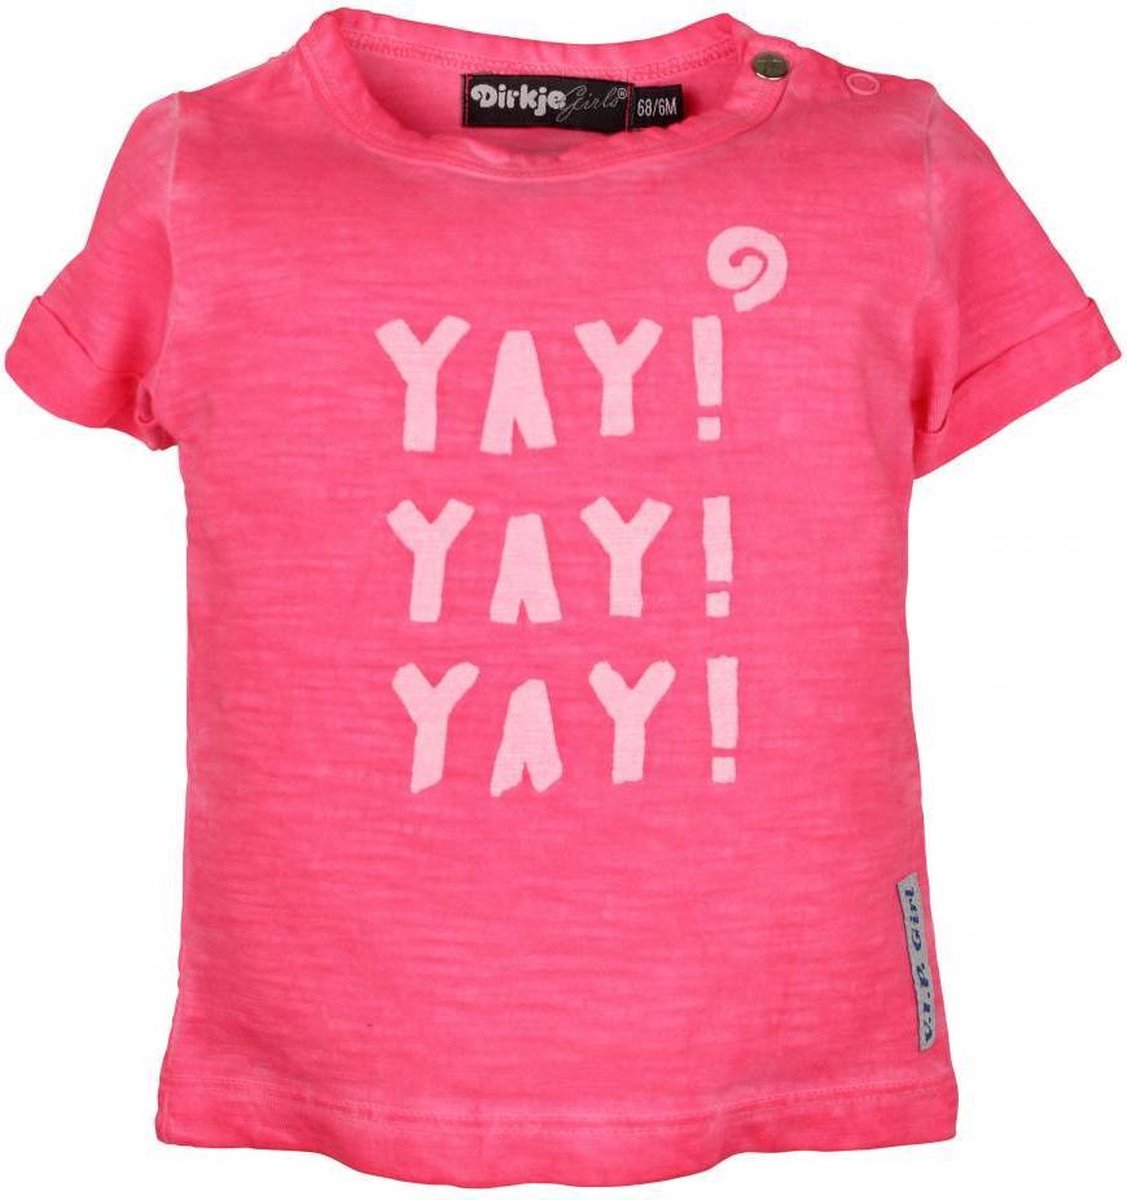 T-shirt YAY! neon rozedirkje -  Maat  116 - Dirkje